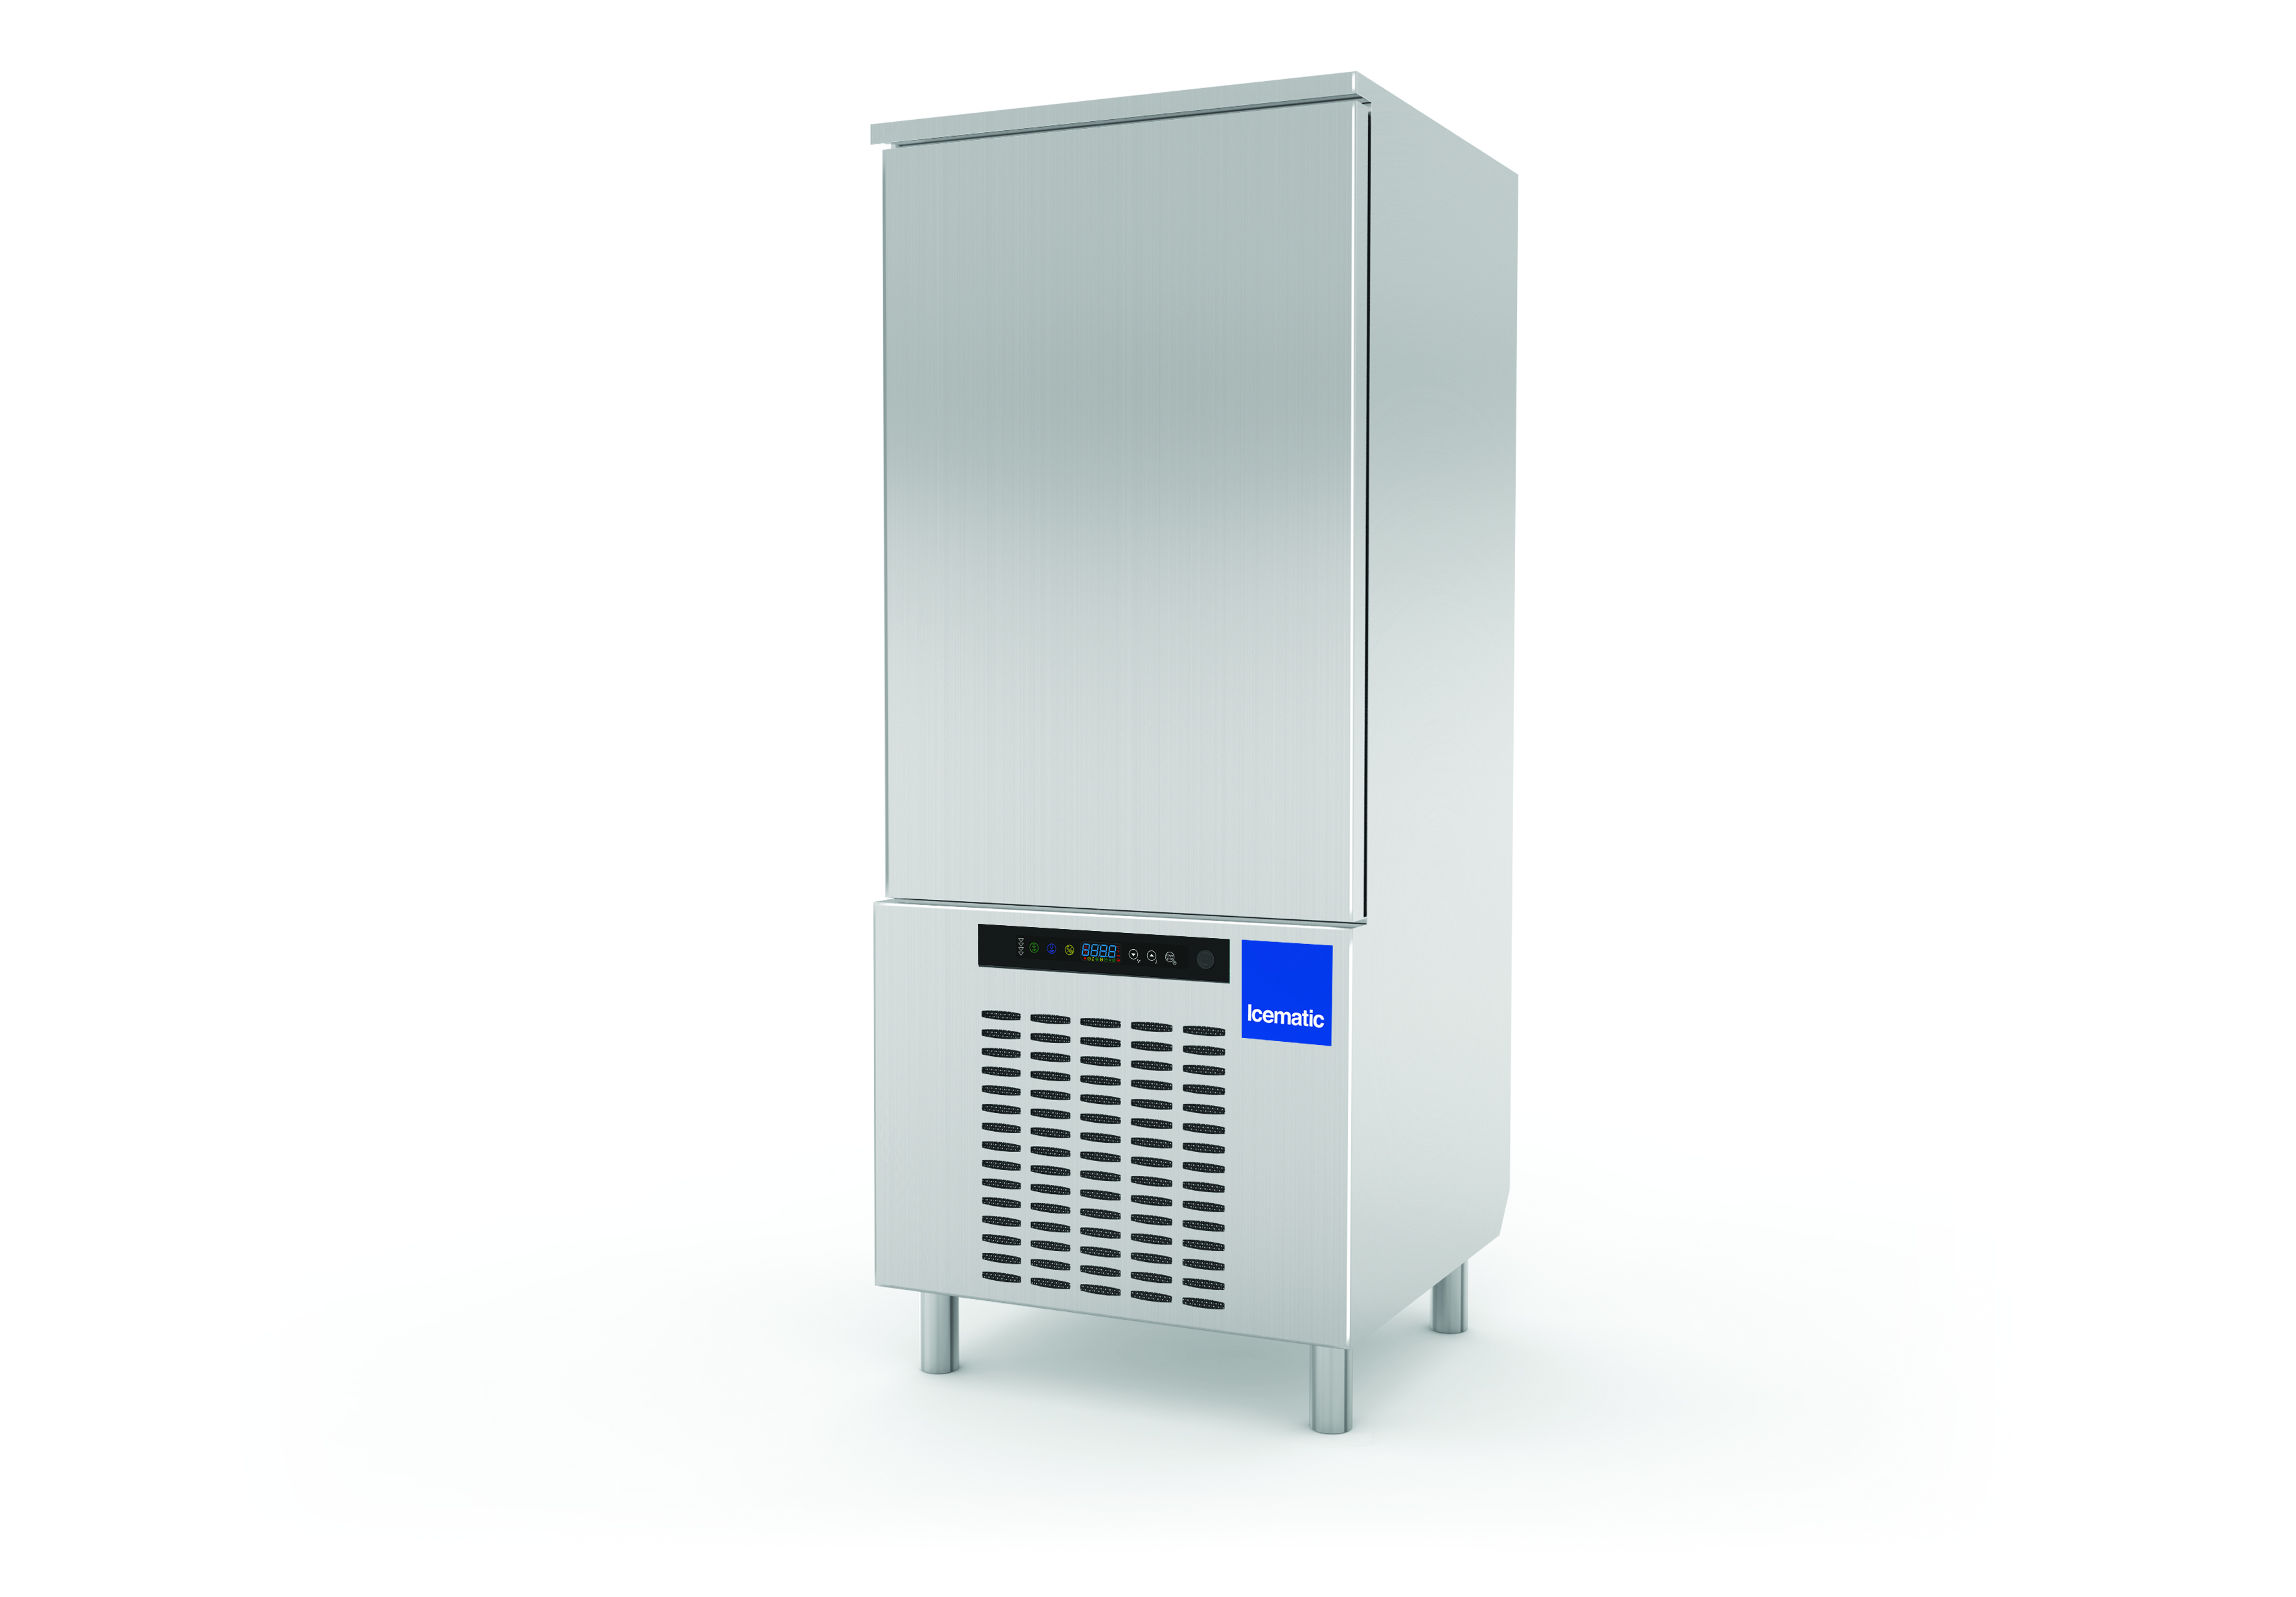 Blast chiller / Shock freezer model ST 15 15 x 1/1 GN